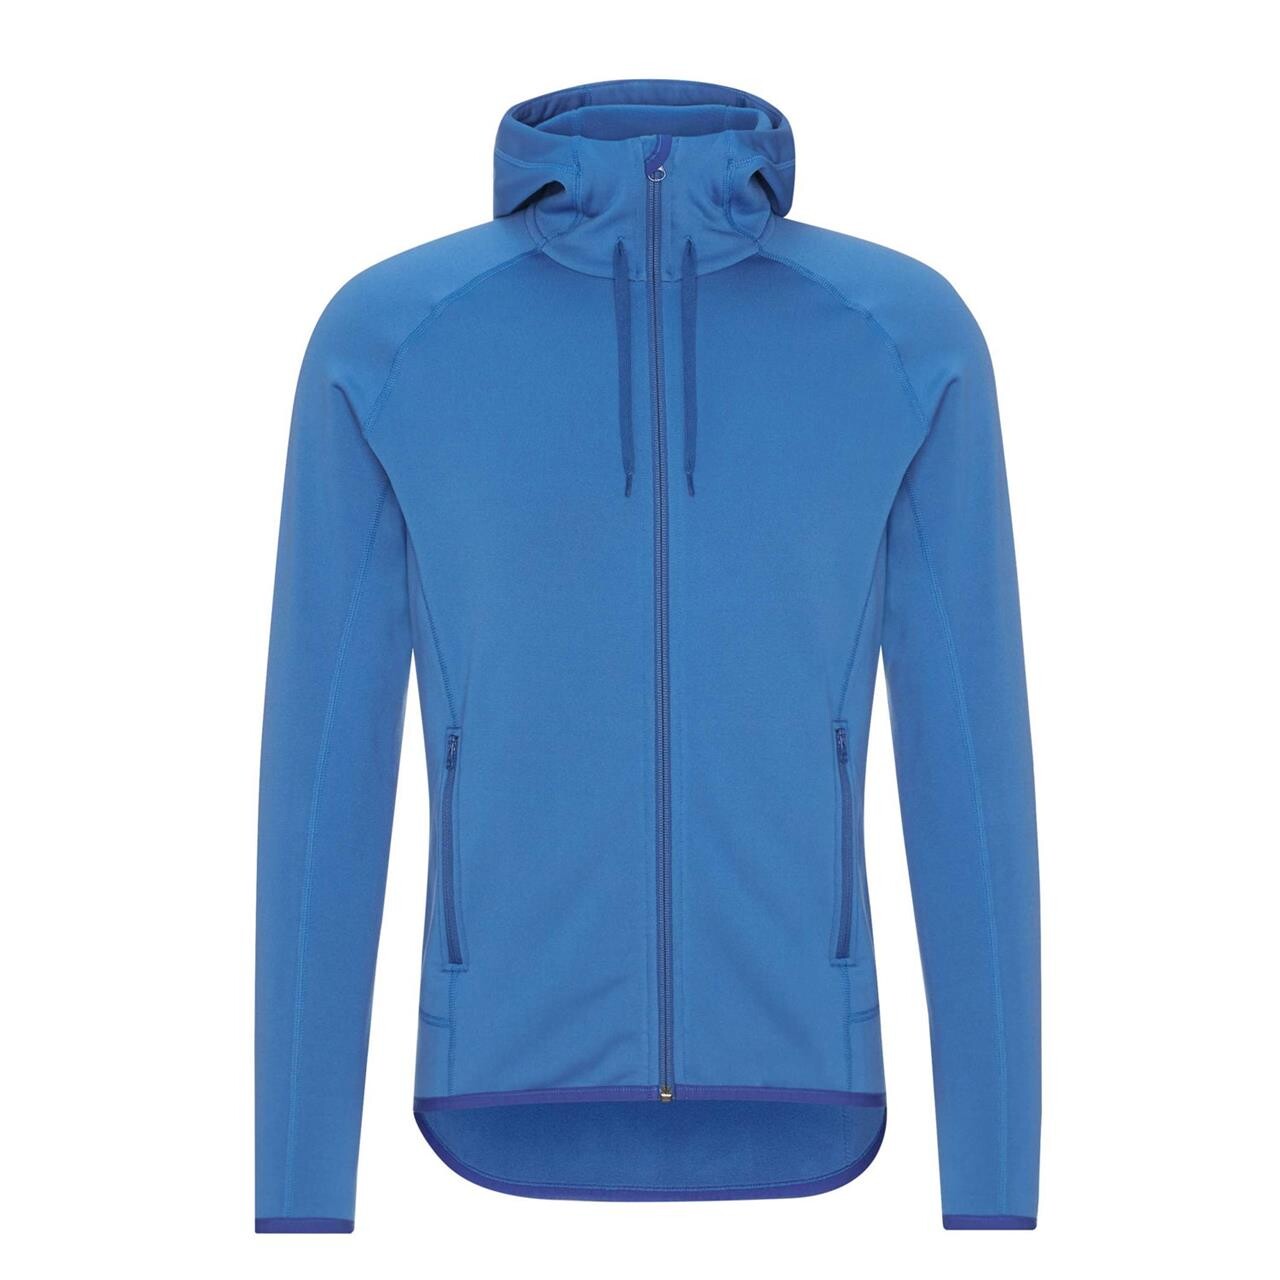 Se Frilufts Mens Sjunkhatten Hooded Fleece Jacket (Blå (DARK BLUE) Medium) hos Friluftsland.dk